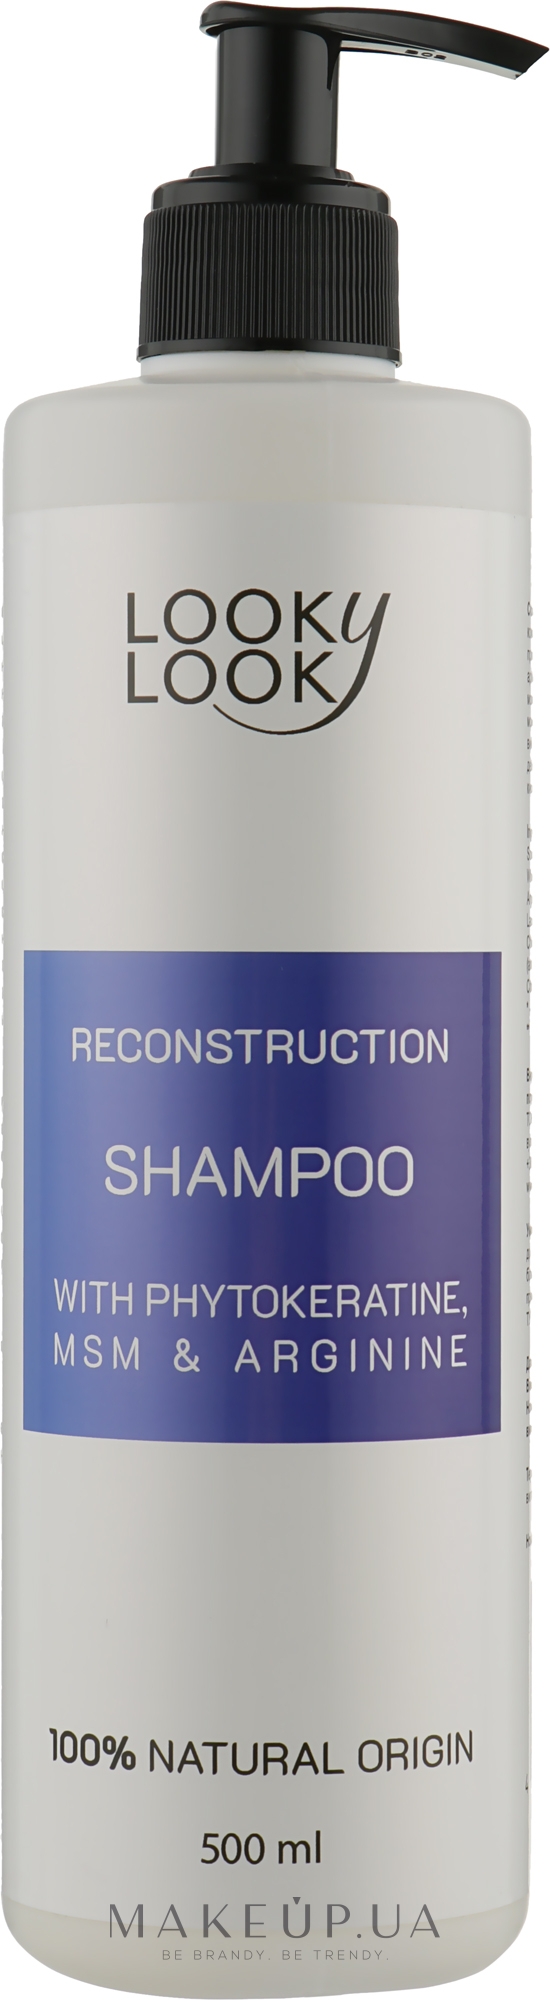 Шампунь для восстановления волос - Looky Look Reconstruction Shampoo — фото 500ml